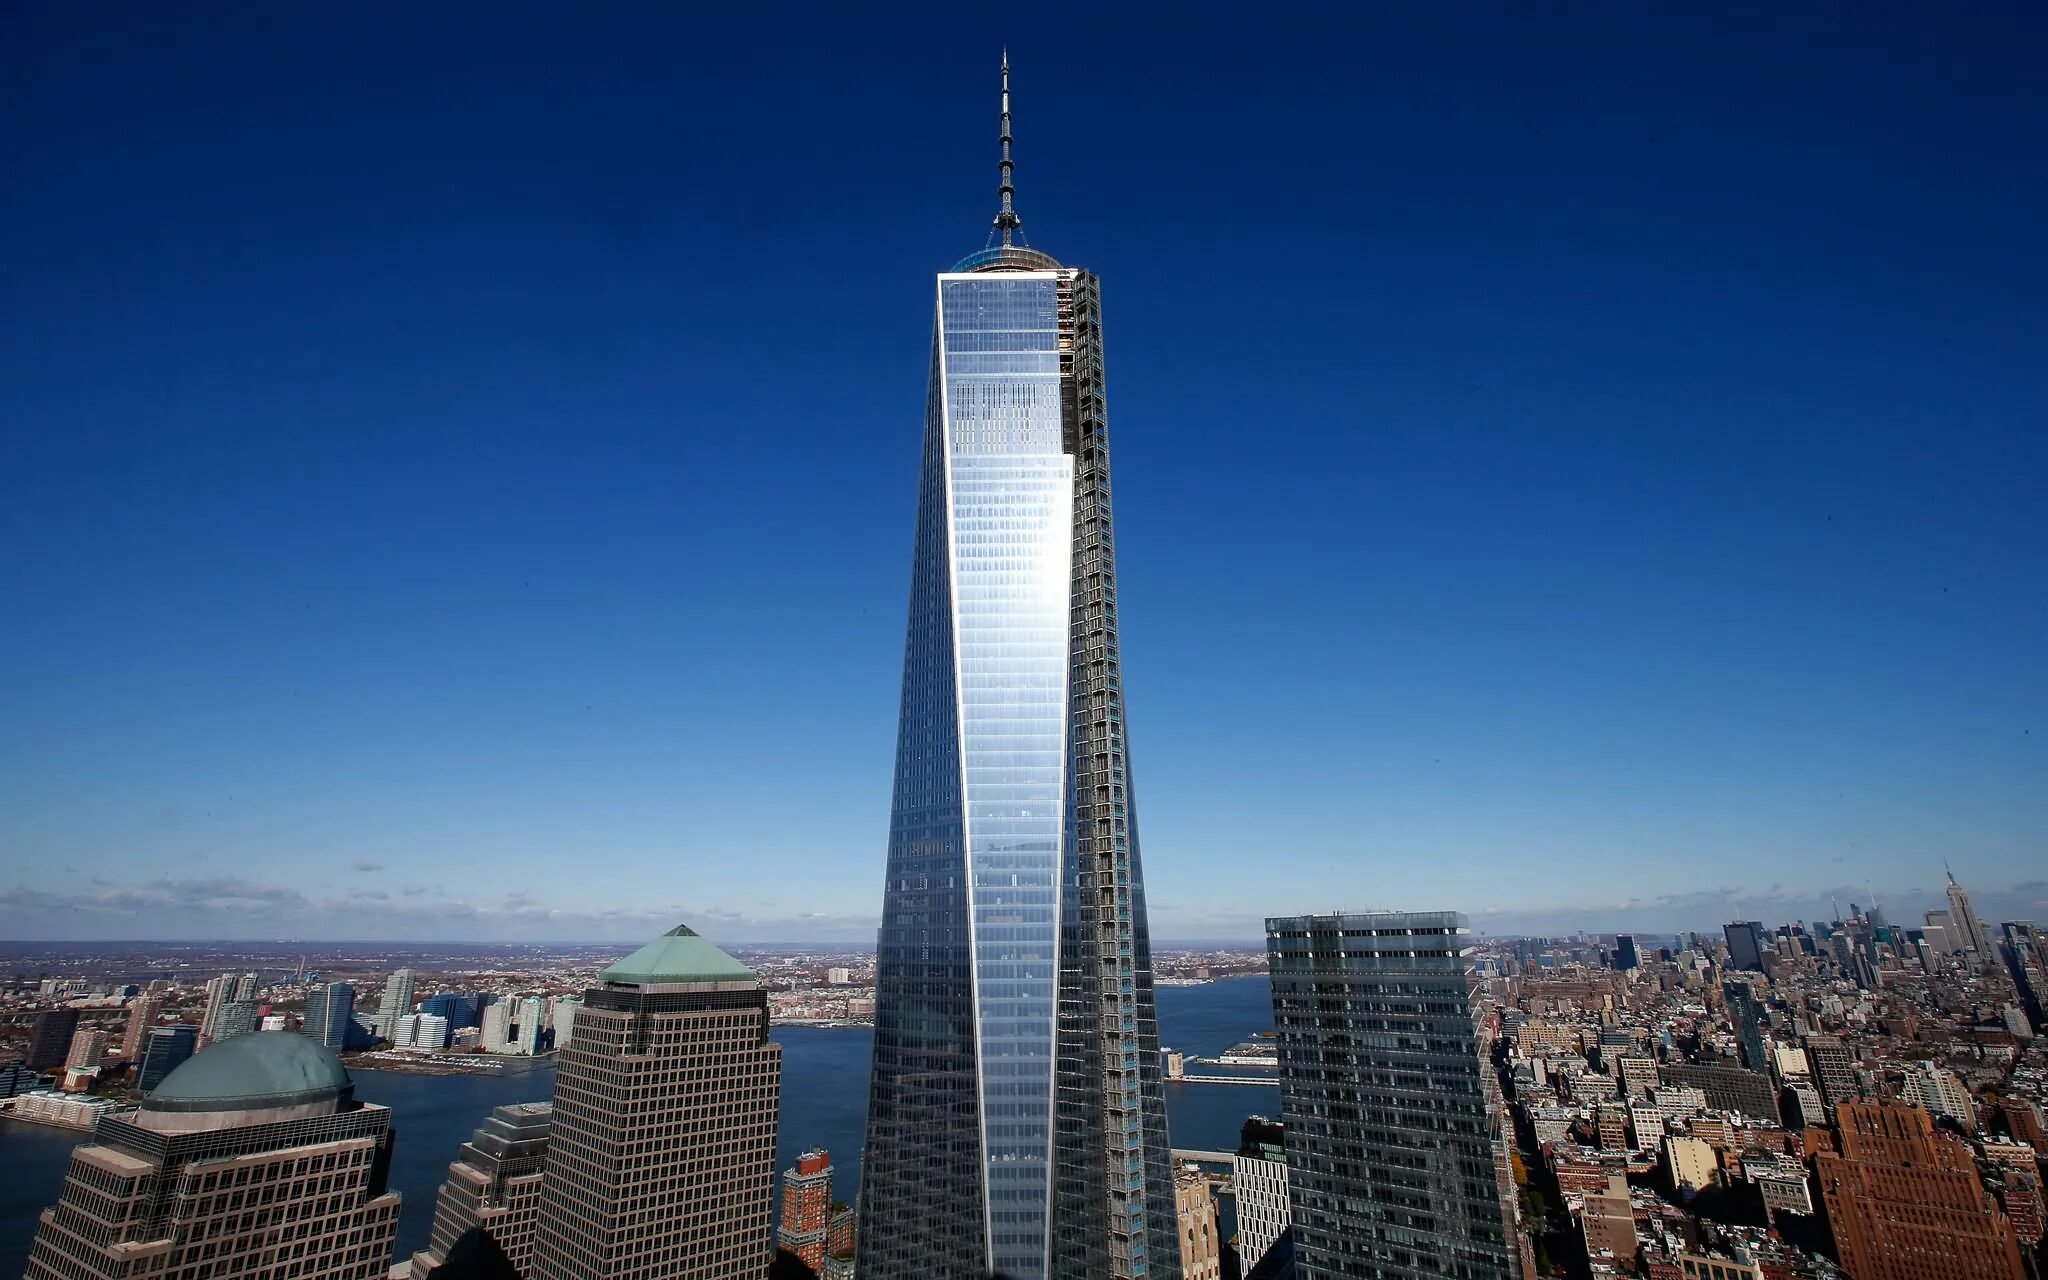 Башня свободы в Нью-Йорке. Башни ВТЦ В Нью-Йорке. Всемирный торговый центр 1 Нью-Йорк. Всемирный торговый центр башня свободы. Самый высокий дом на земле